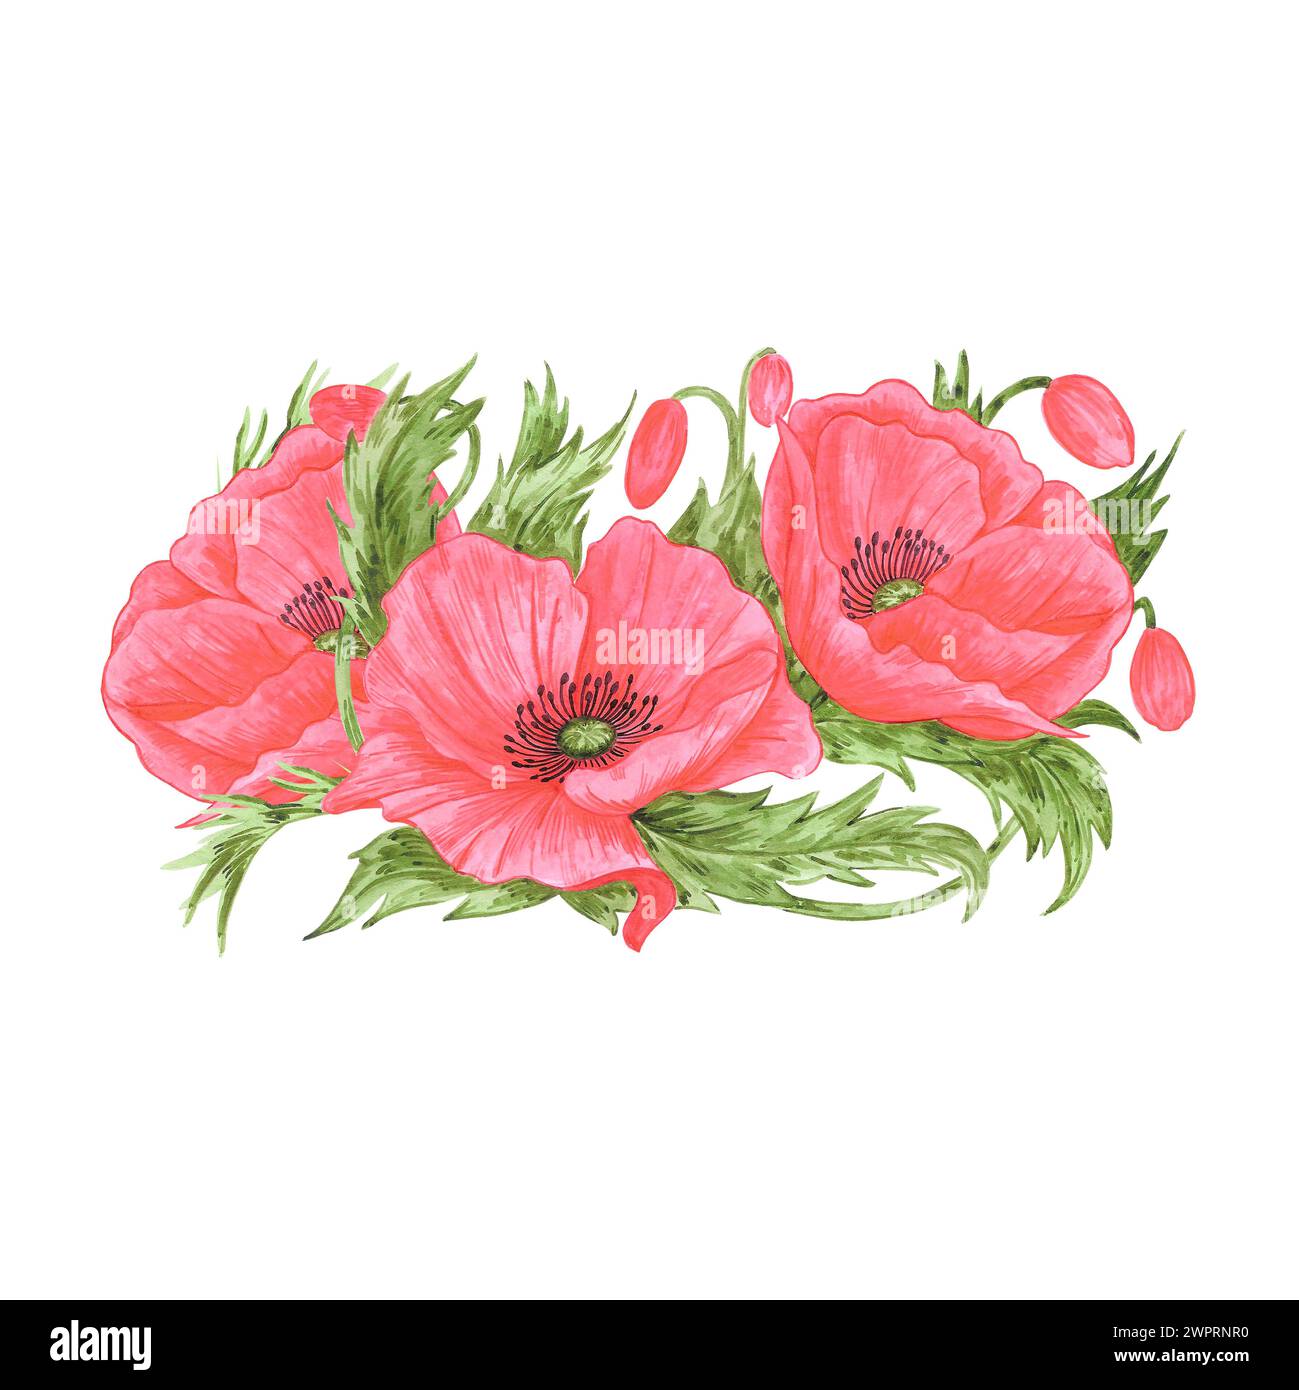 Bouquet de fleurs de coquelicot rouge dessiné à l'aquarelle à la main isolé sur fond blanc. Peut être utilisé pour les cartes postales, affiches et autres produits imprimés Banque D'Images